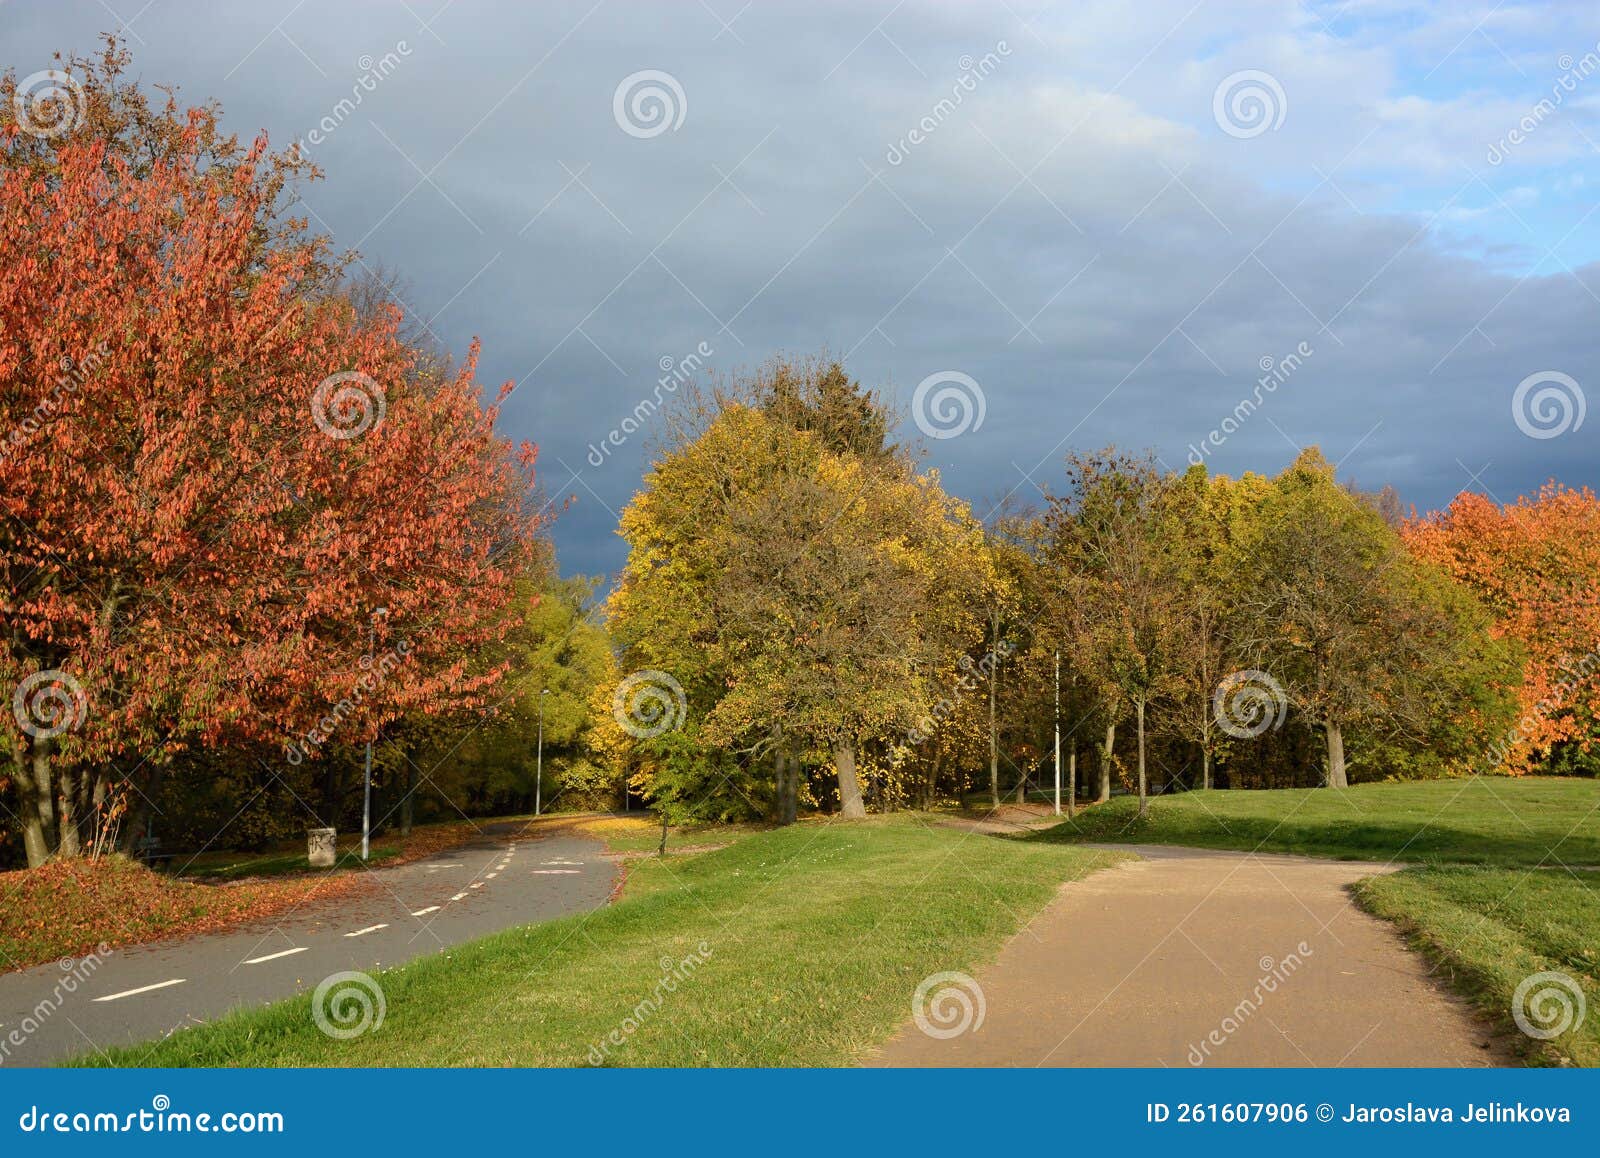 ladronka, podzimnÃÂ­ park s barevnÃÂ½mi stromy, praha